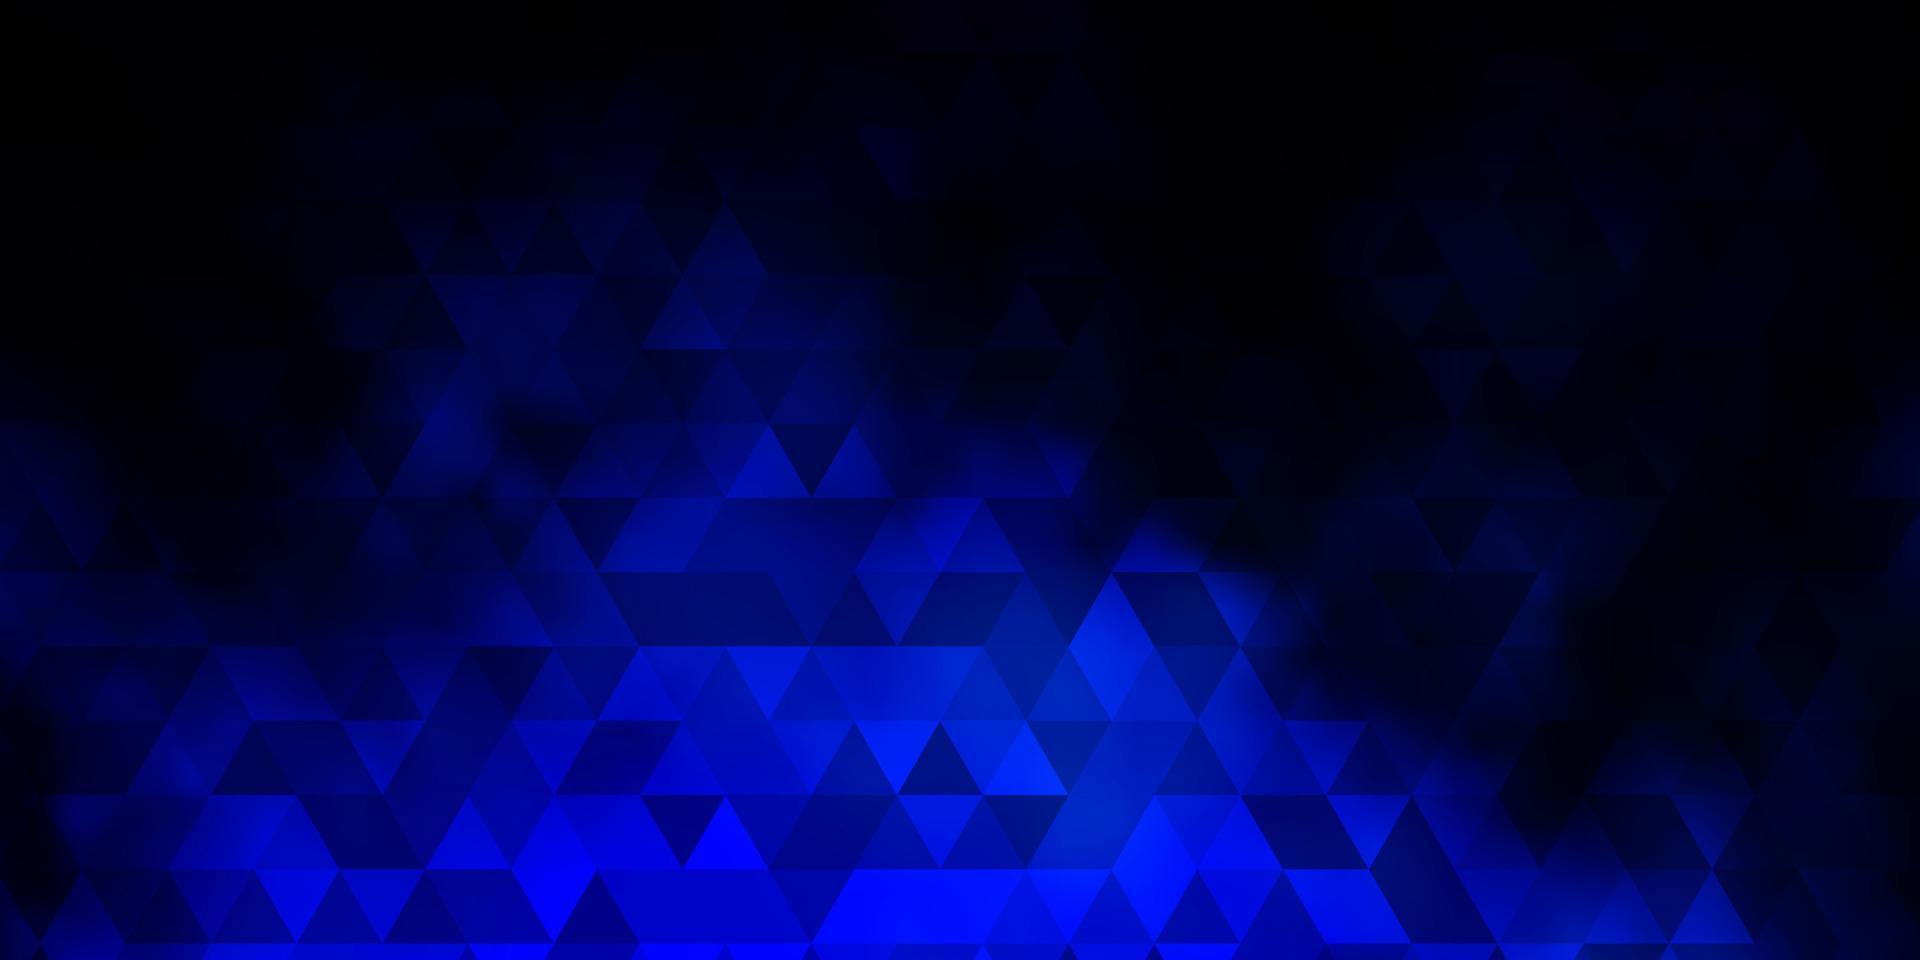 modello vettoriale blu scuro con stile poligonale.